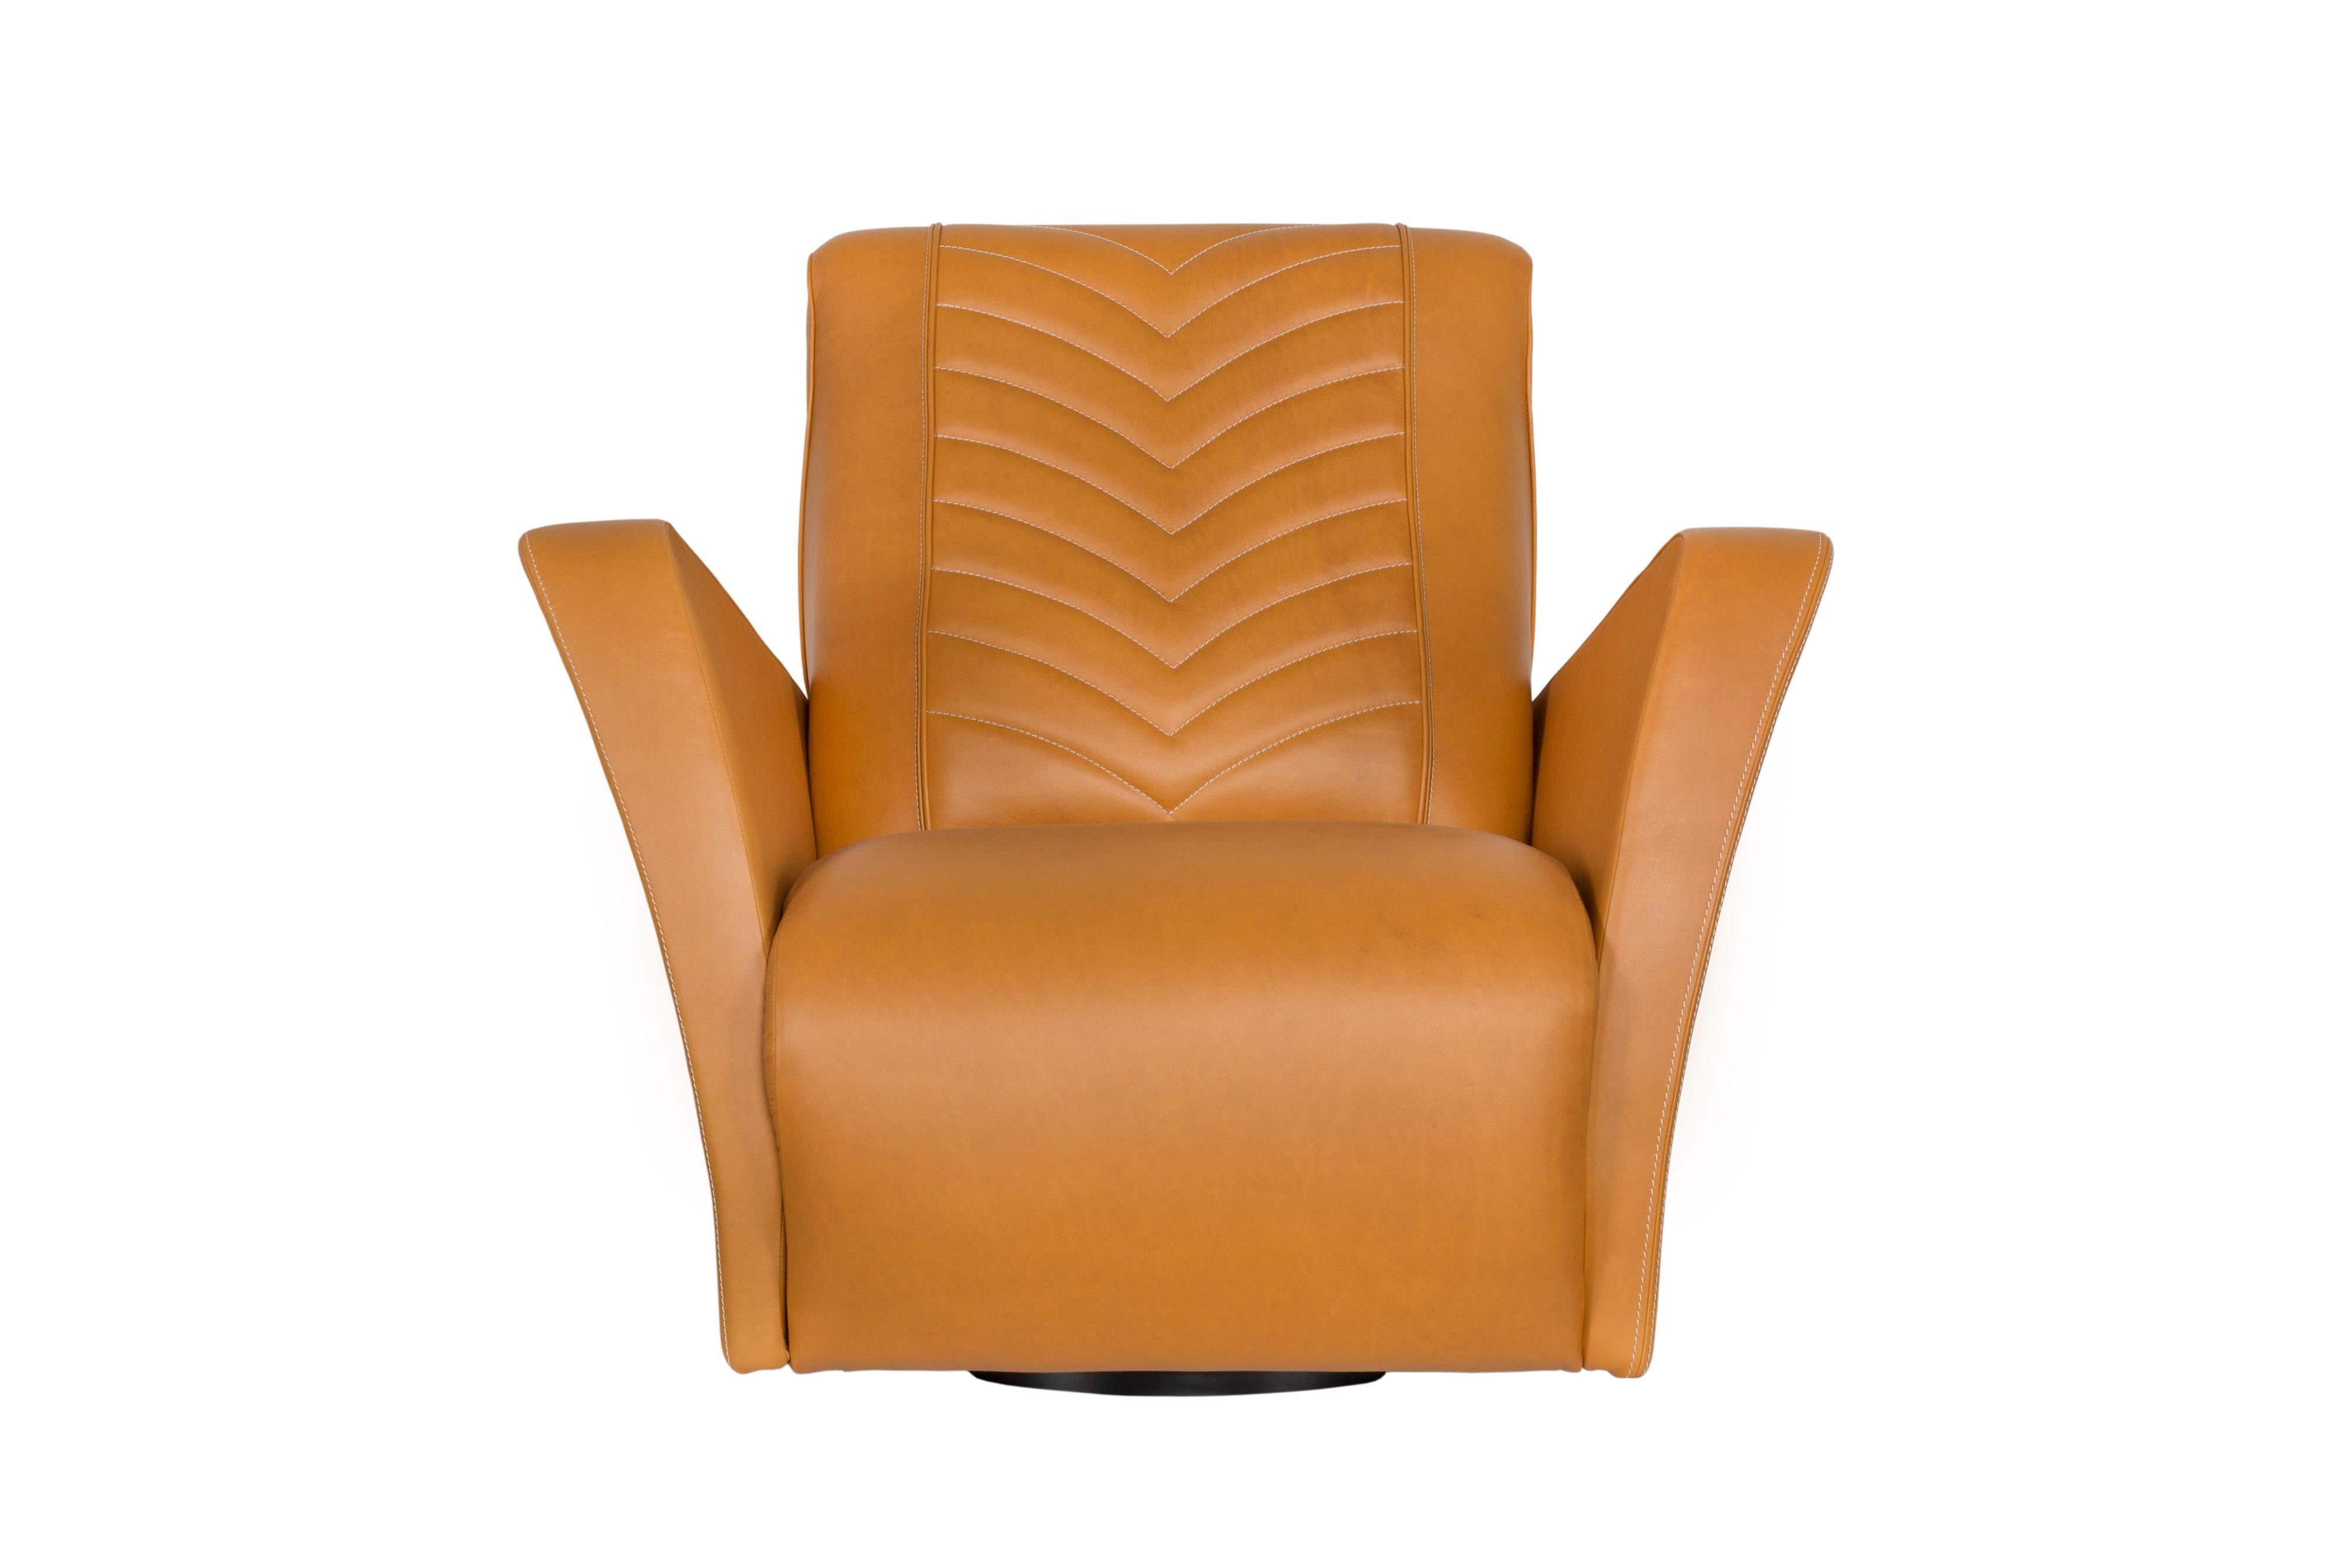 MacQueen Sessel, Modern Collection'S, handgefertigt in Portugal - Europa von GF Modern.

Mit seinem eleganten Design, das von den Sportwagen der 1960er und 1970er Jahre inspiriert ist, zieht dieser Sessel mit seinen schönen Details die Blicke auf